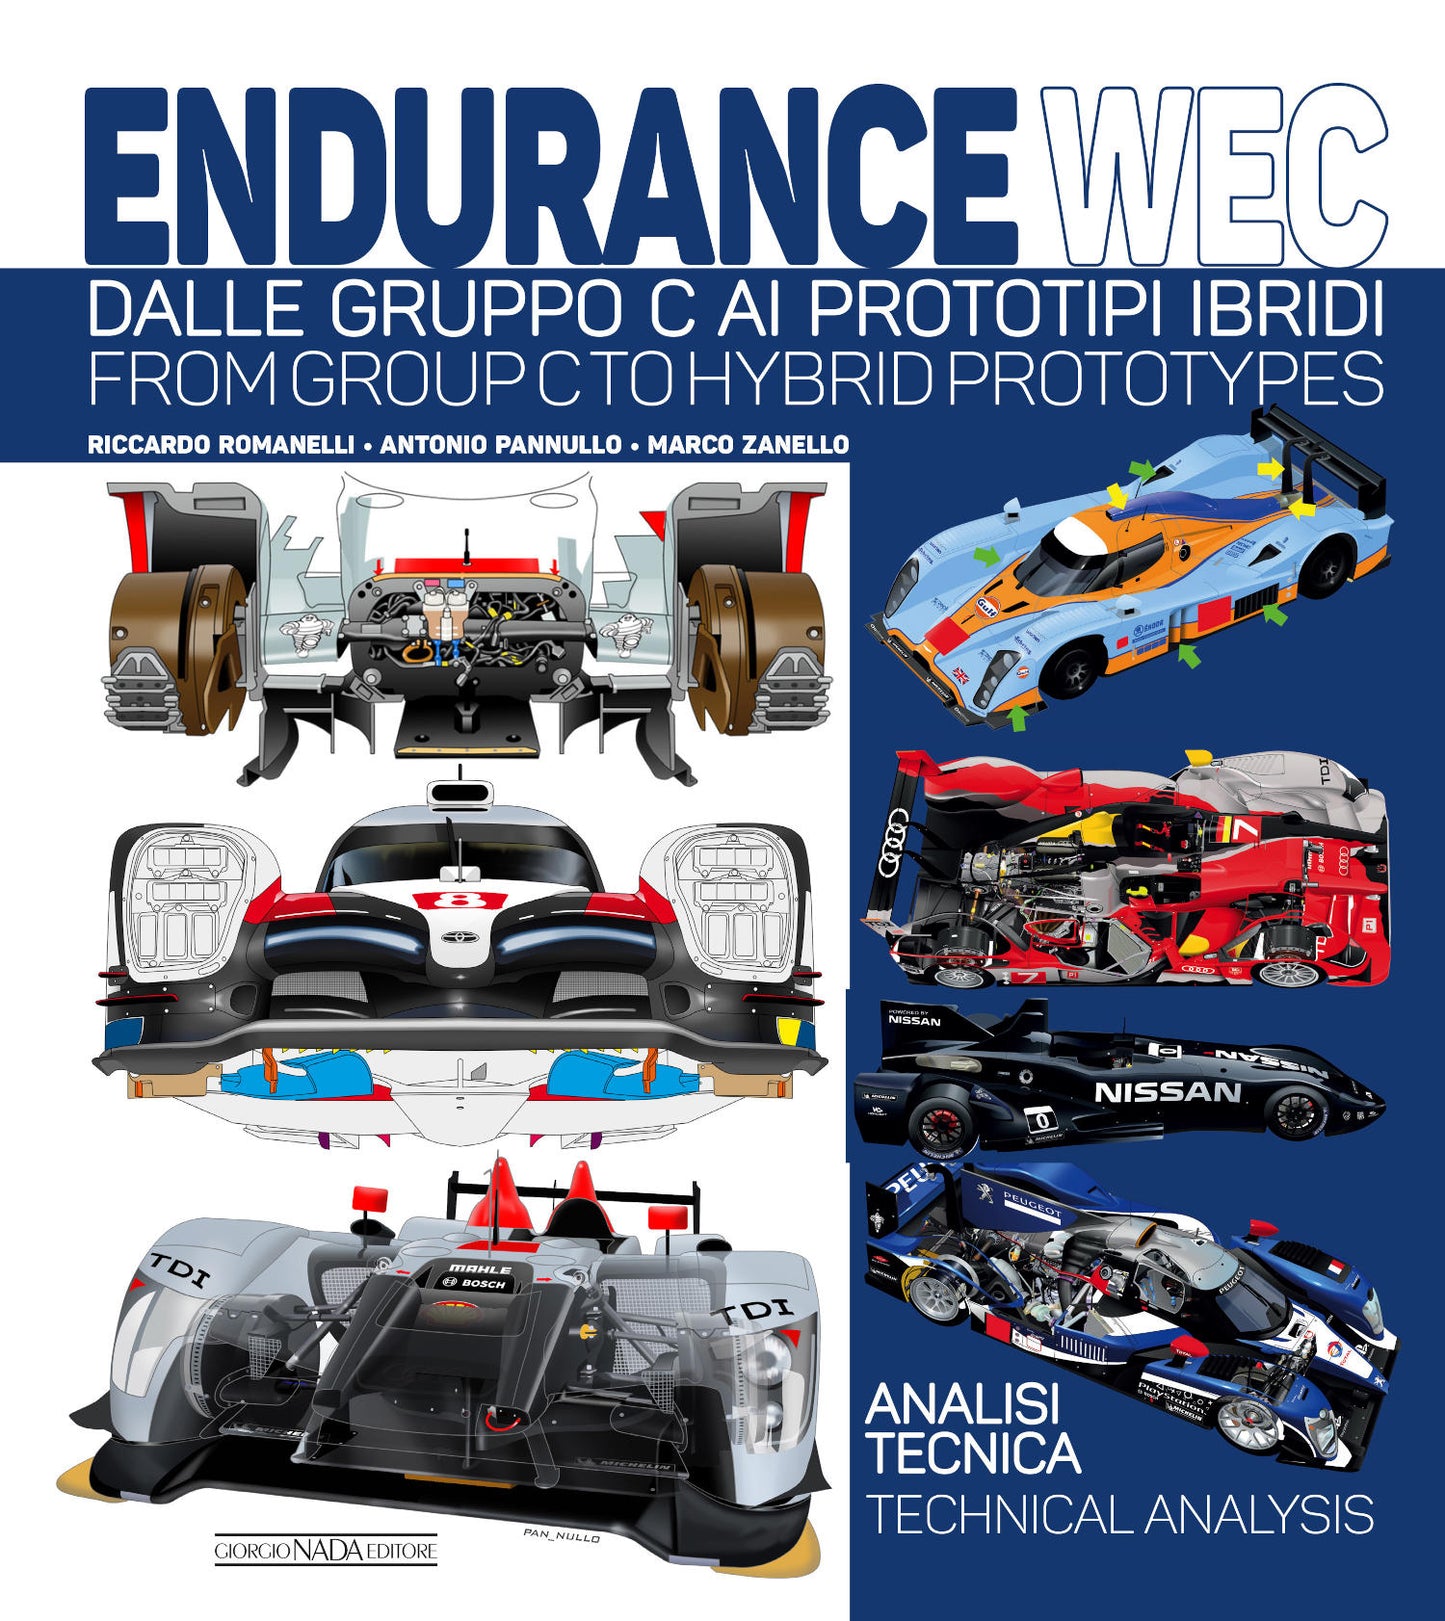 Endurance WEC::Dalle Gruppo C ai prototipi ibridi/ From Group C to Hybrid prototypes